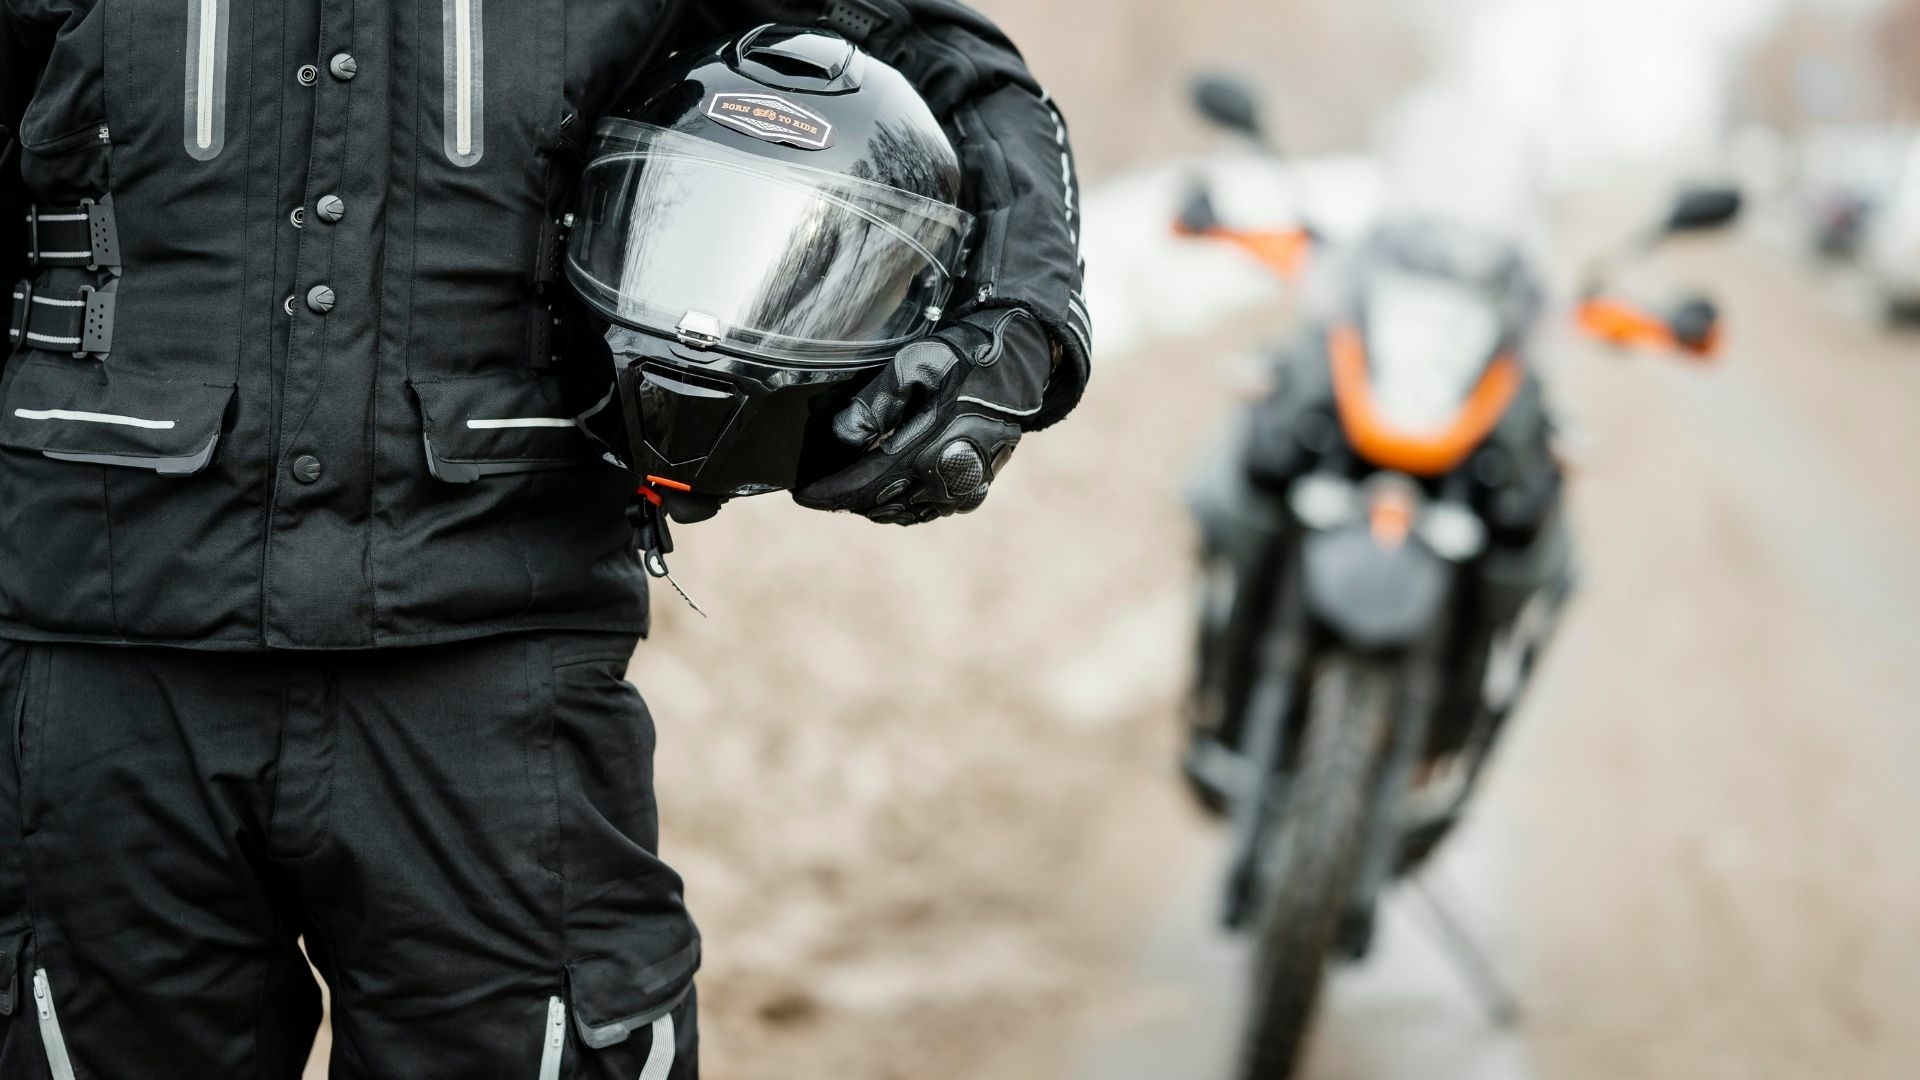 Protection contre le froid à moto : quels équipements choisir ?